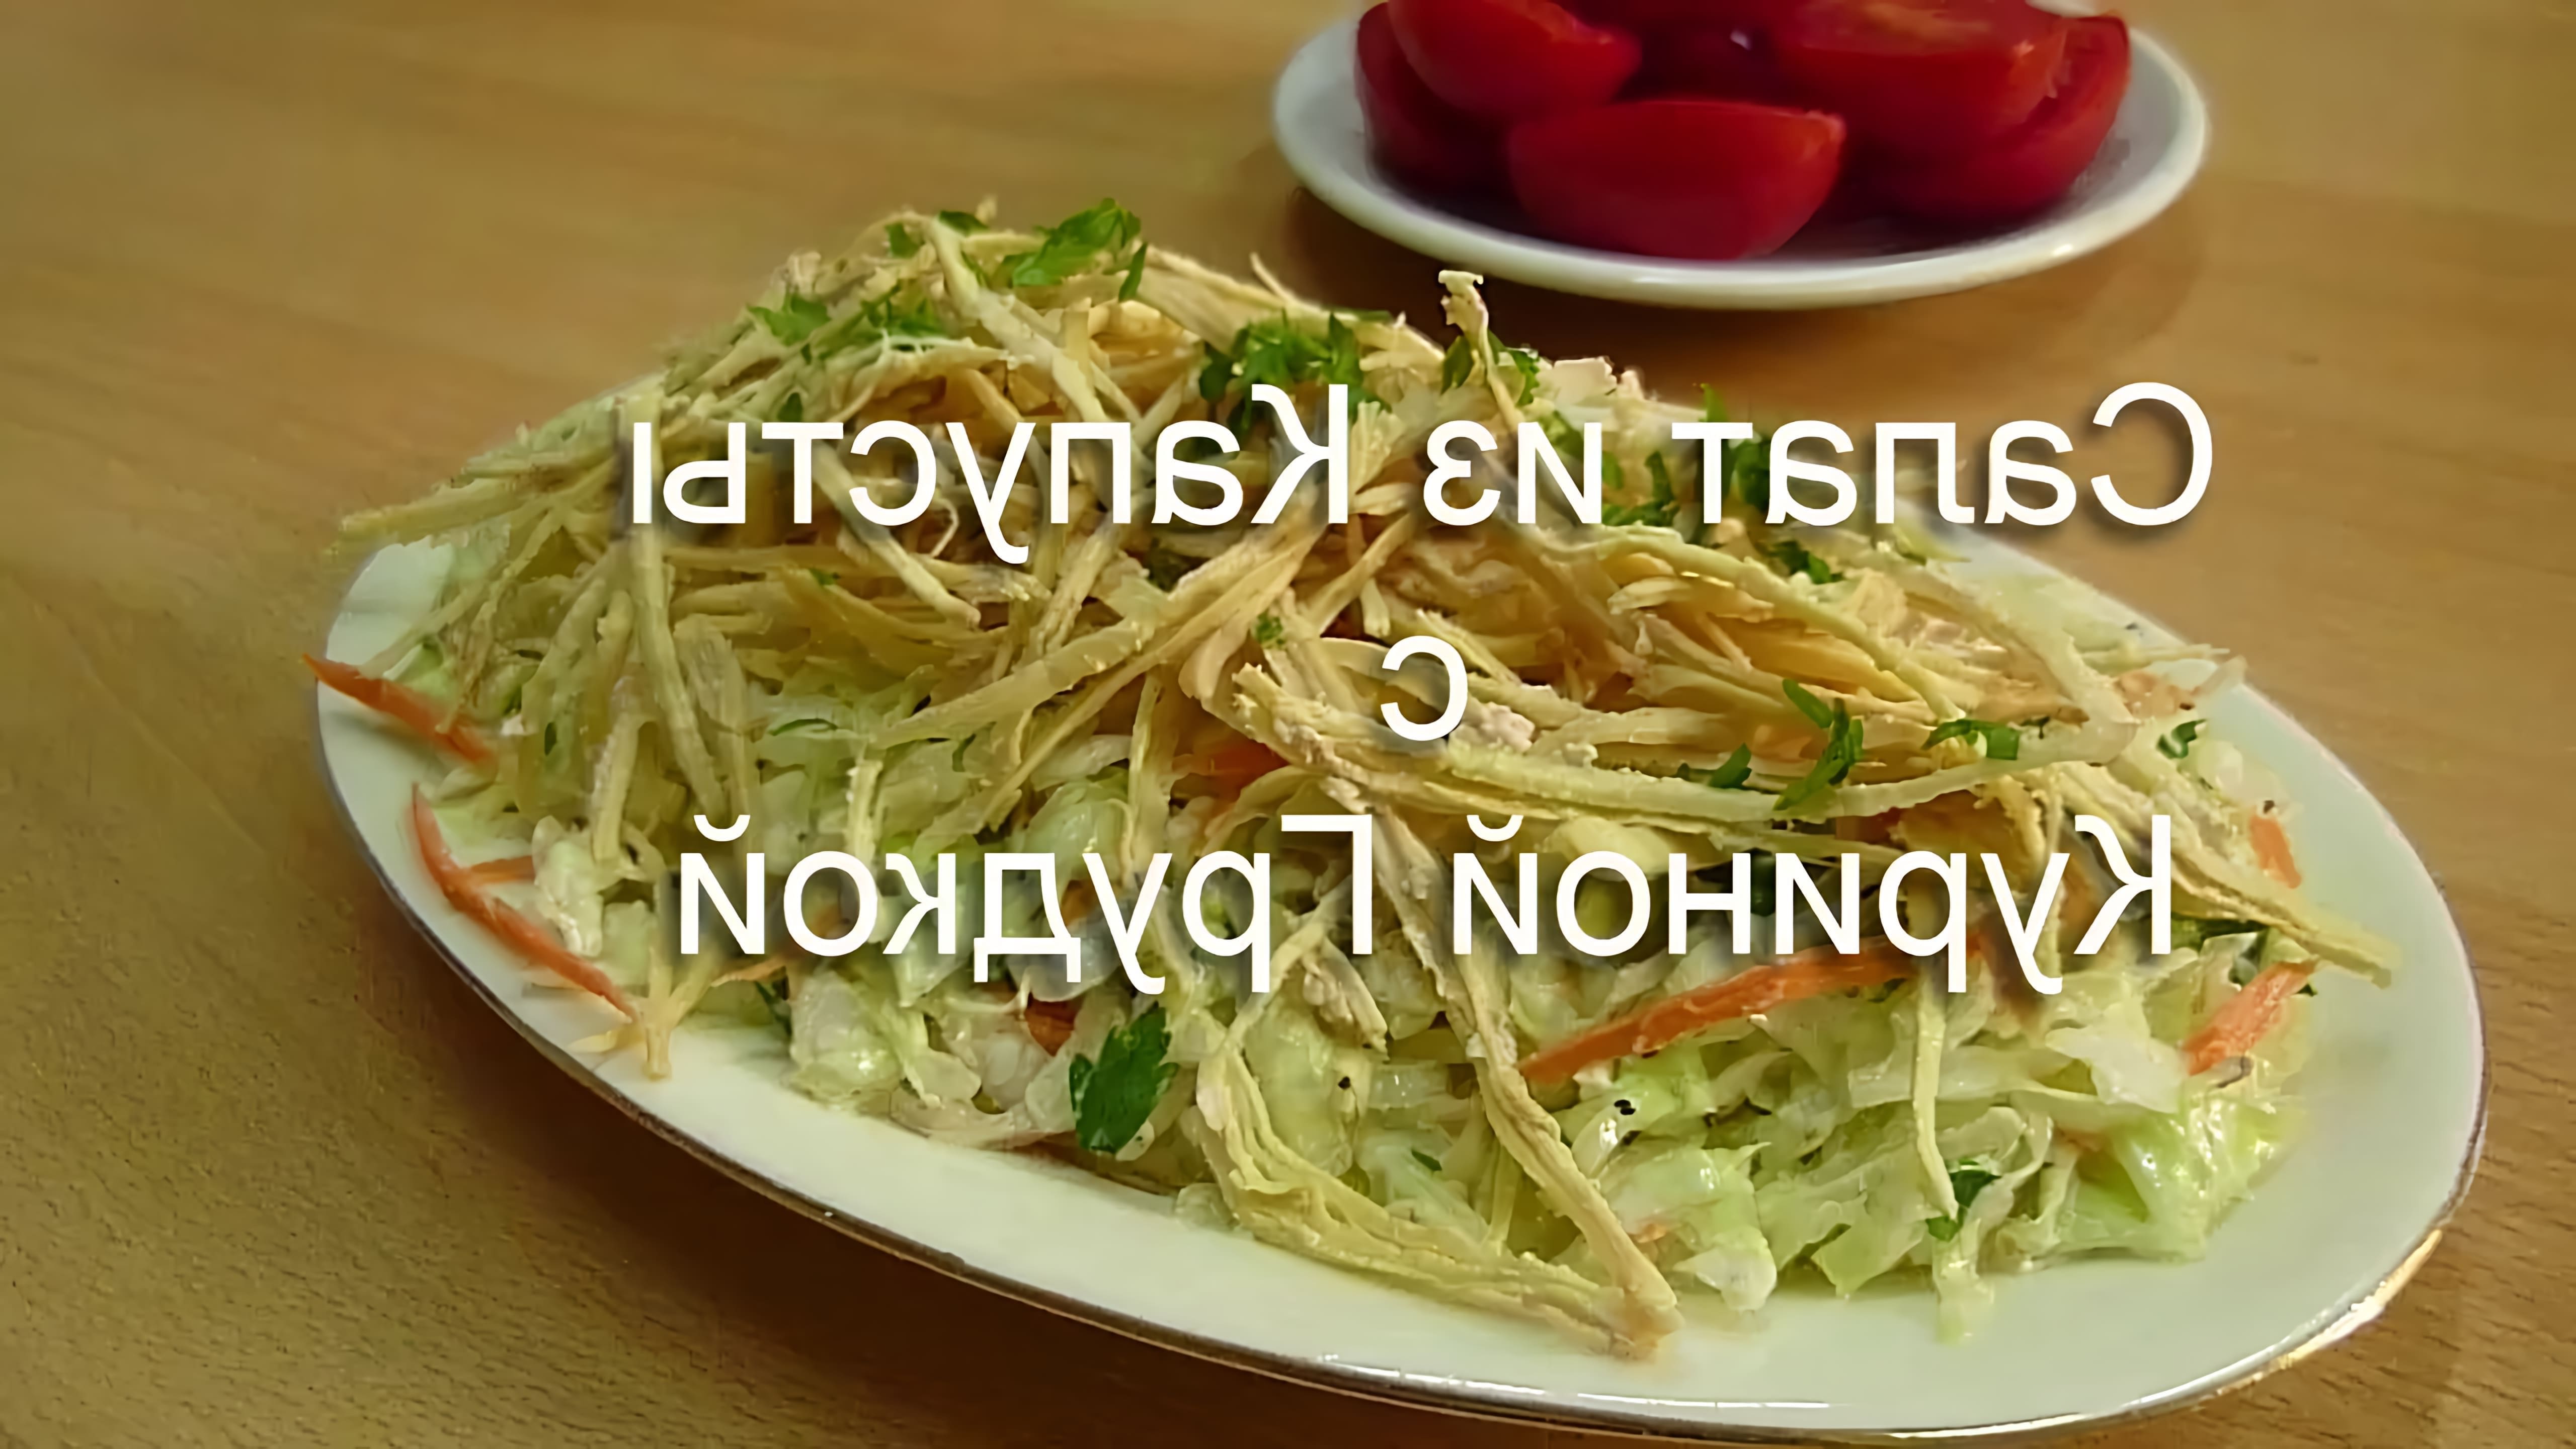 В этом видео демонстрируется рецепт салата из капусты с куриной грудкой, который называется "Горка"